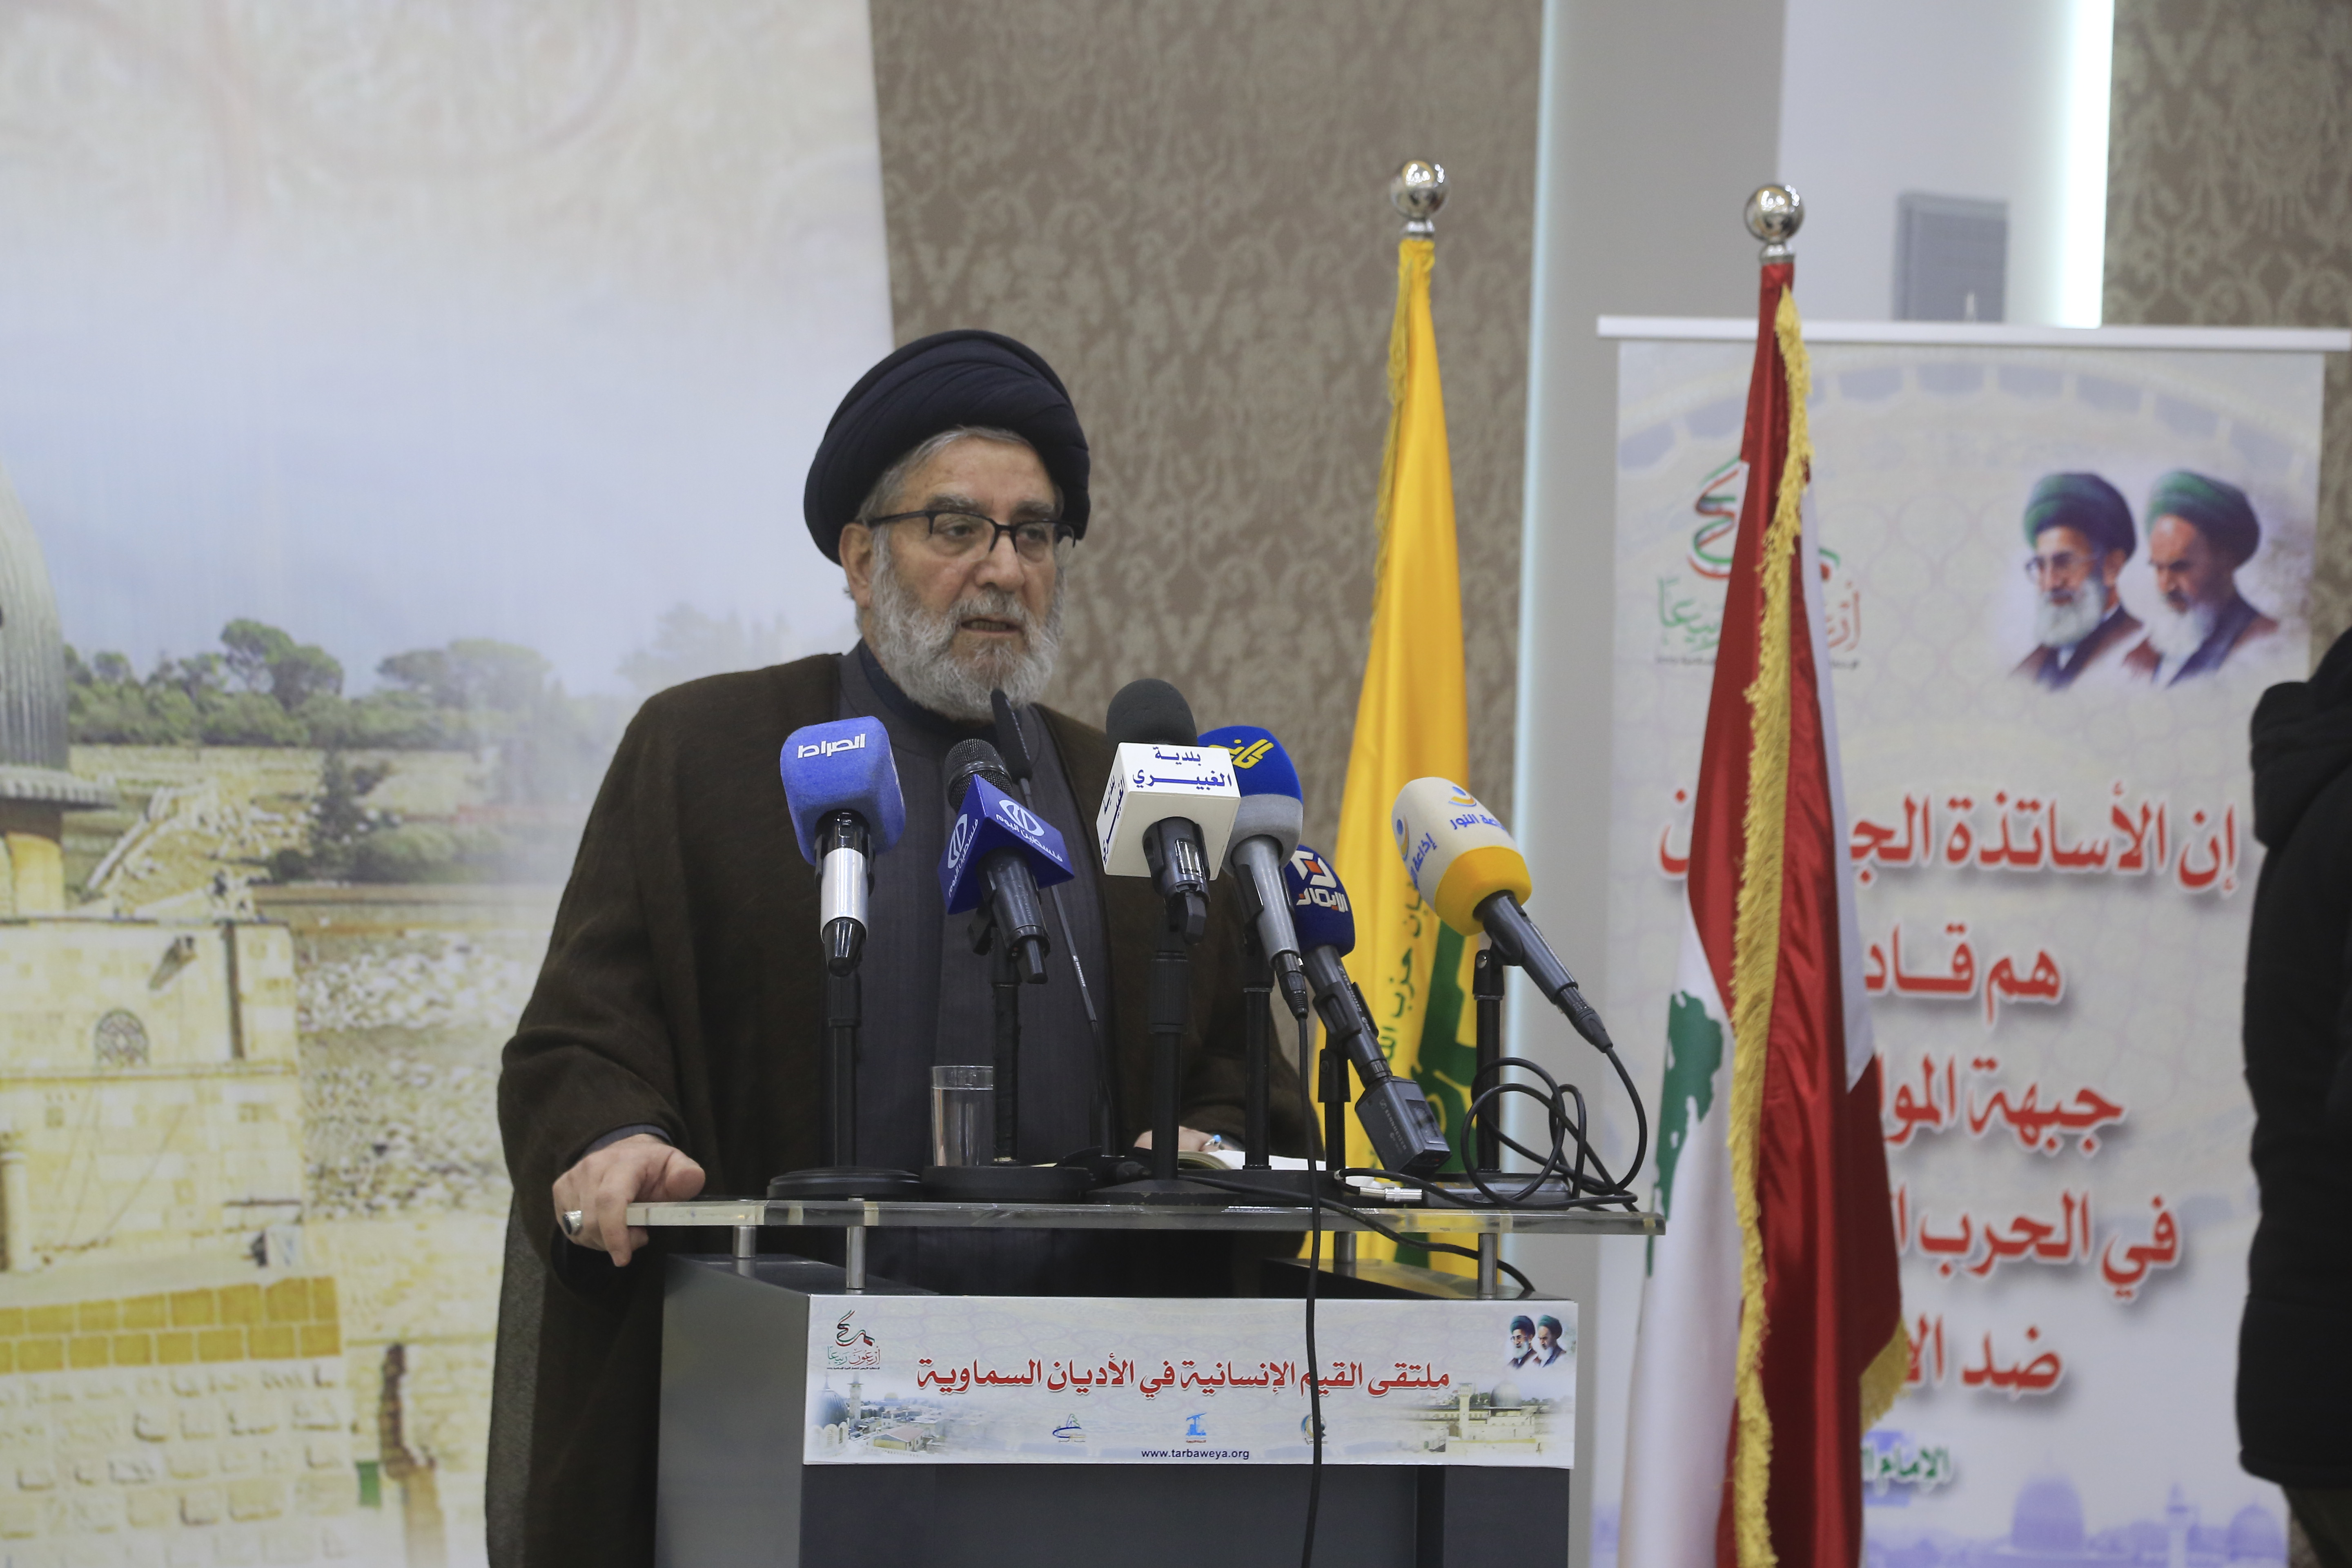 افتتاح ملتقى القيم الإنسانية في الأديان السماوية برعاية رئيس المجلس السياسي في حزب الله